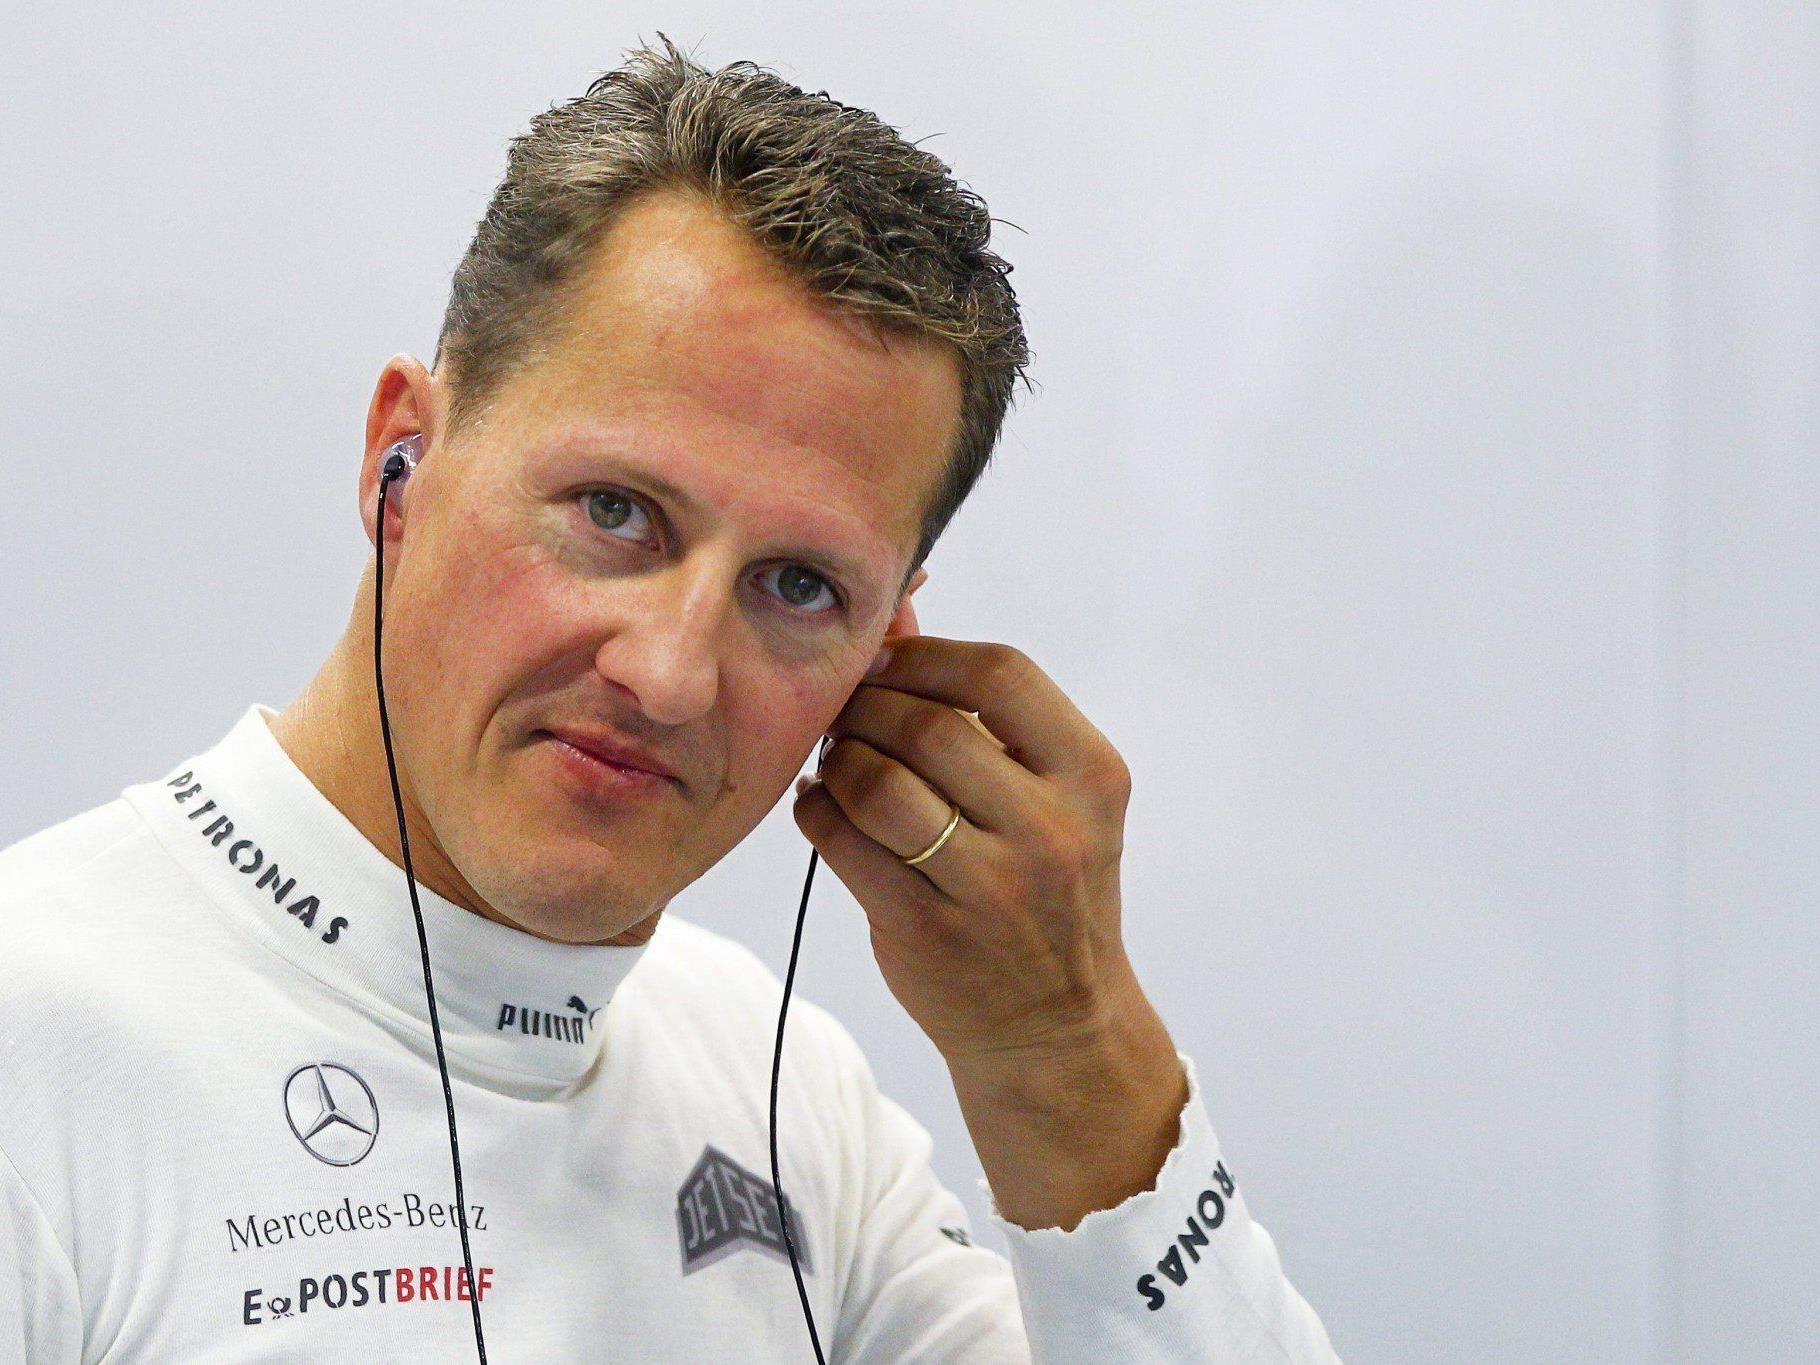 Die Spekulationen um Schumachers Gesundheitszustand wollen nicht abreißen, Ärzte, Krankenhaus und Management hüllen sich in Schweigen.